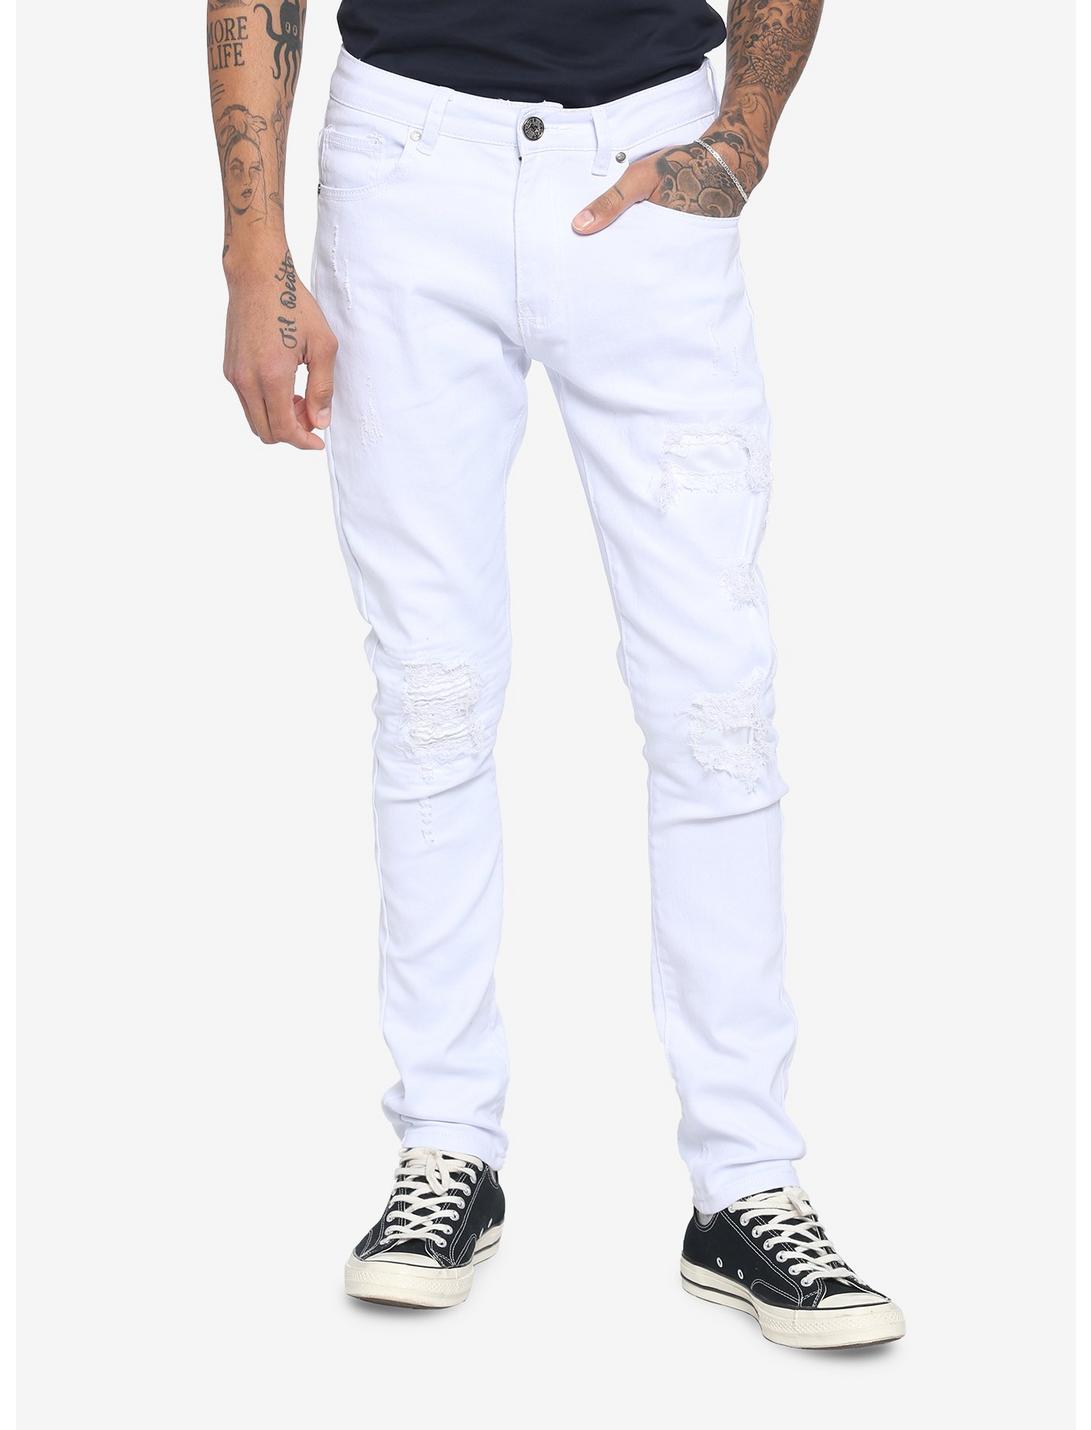 White Destroyed Denim Jeans, BLACK  IVORY, hi-res